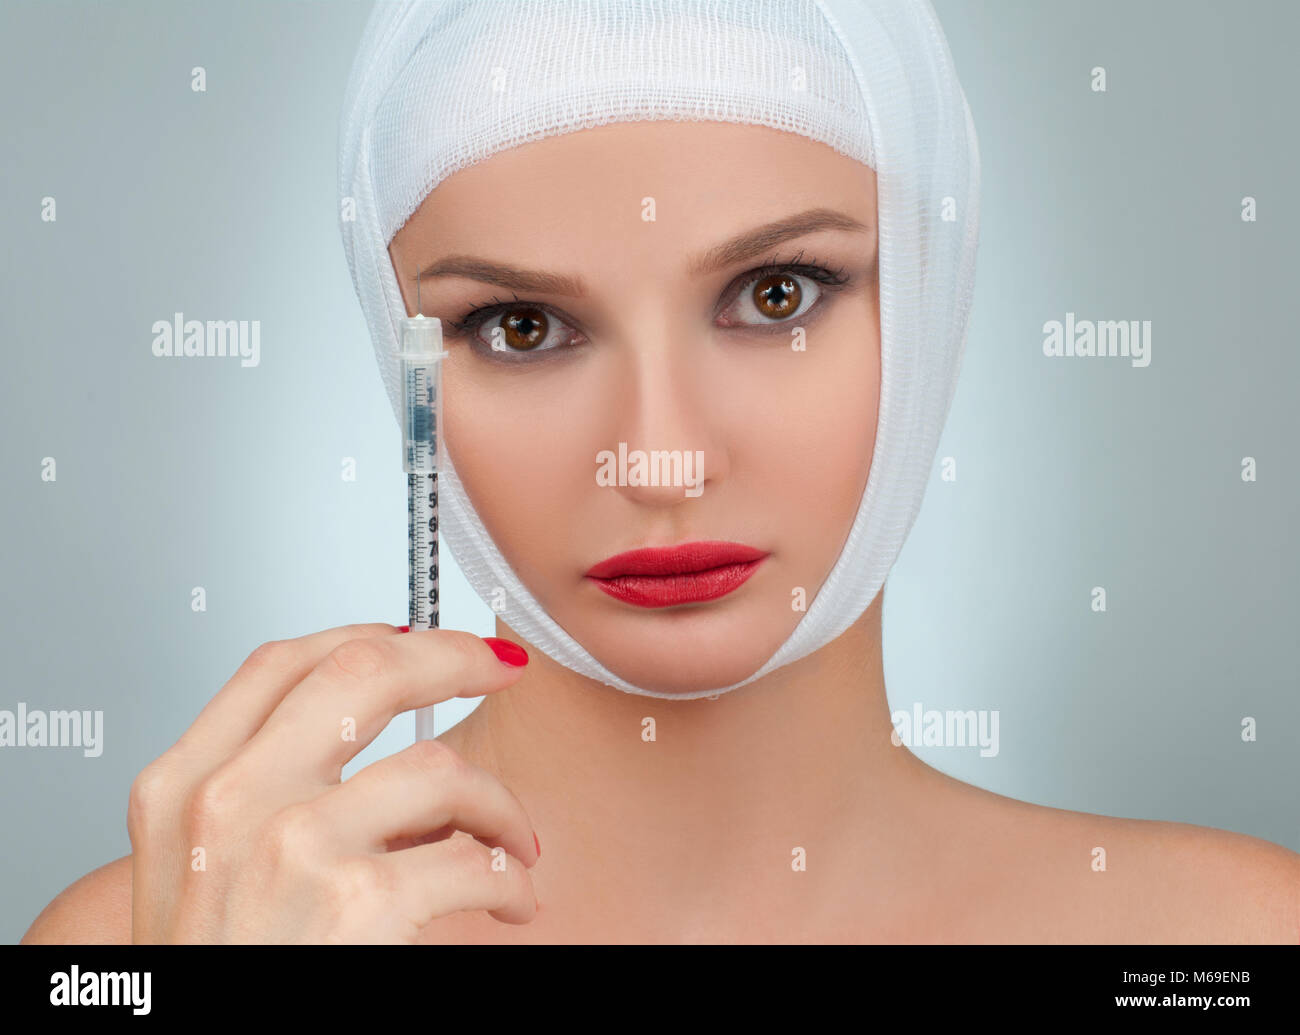 Frau mit Spritze. Schöne Frau nach plastische Chirurgie mit Bandagierten Gesicht. Beauty, Fashion und Plastische Chirurgie Konzept Stockfoto